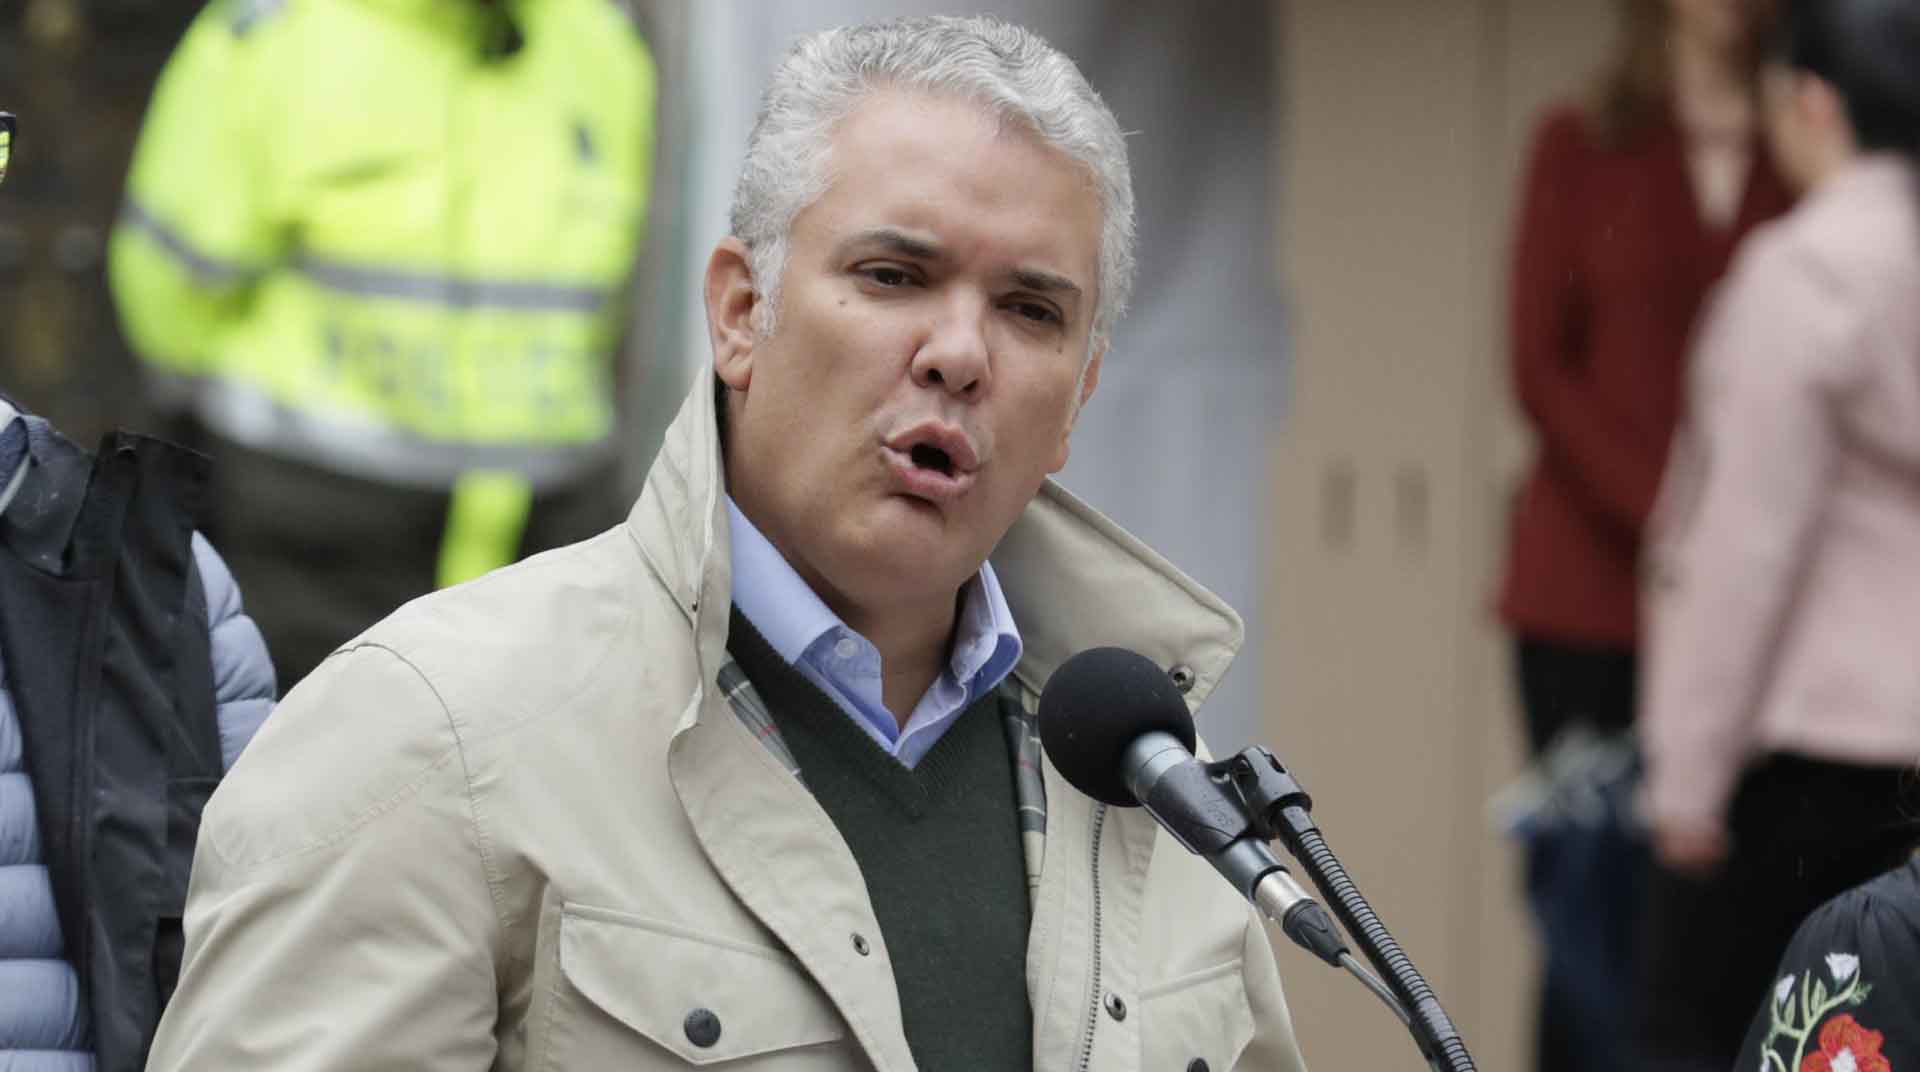 Imagen referencial del presidente de Colombia, Iván Duque, quien respondió a la orden de arresto en su contra. Foto: EFE.